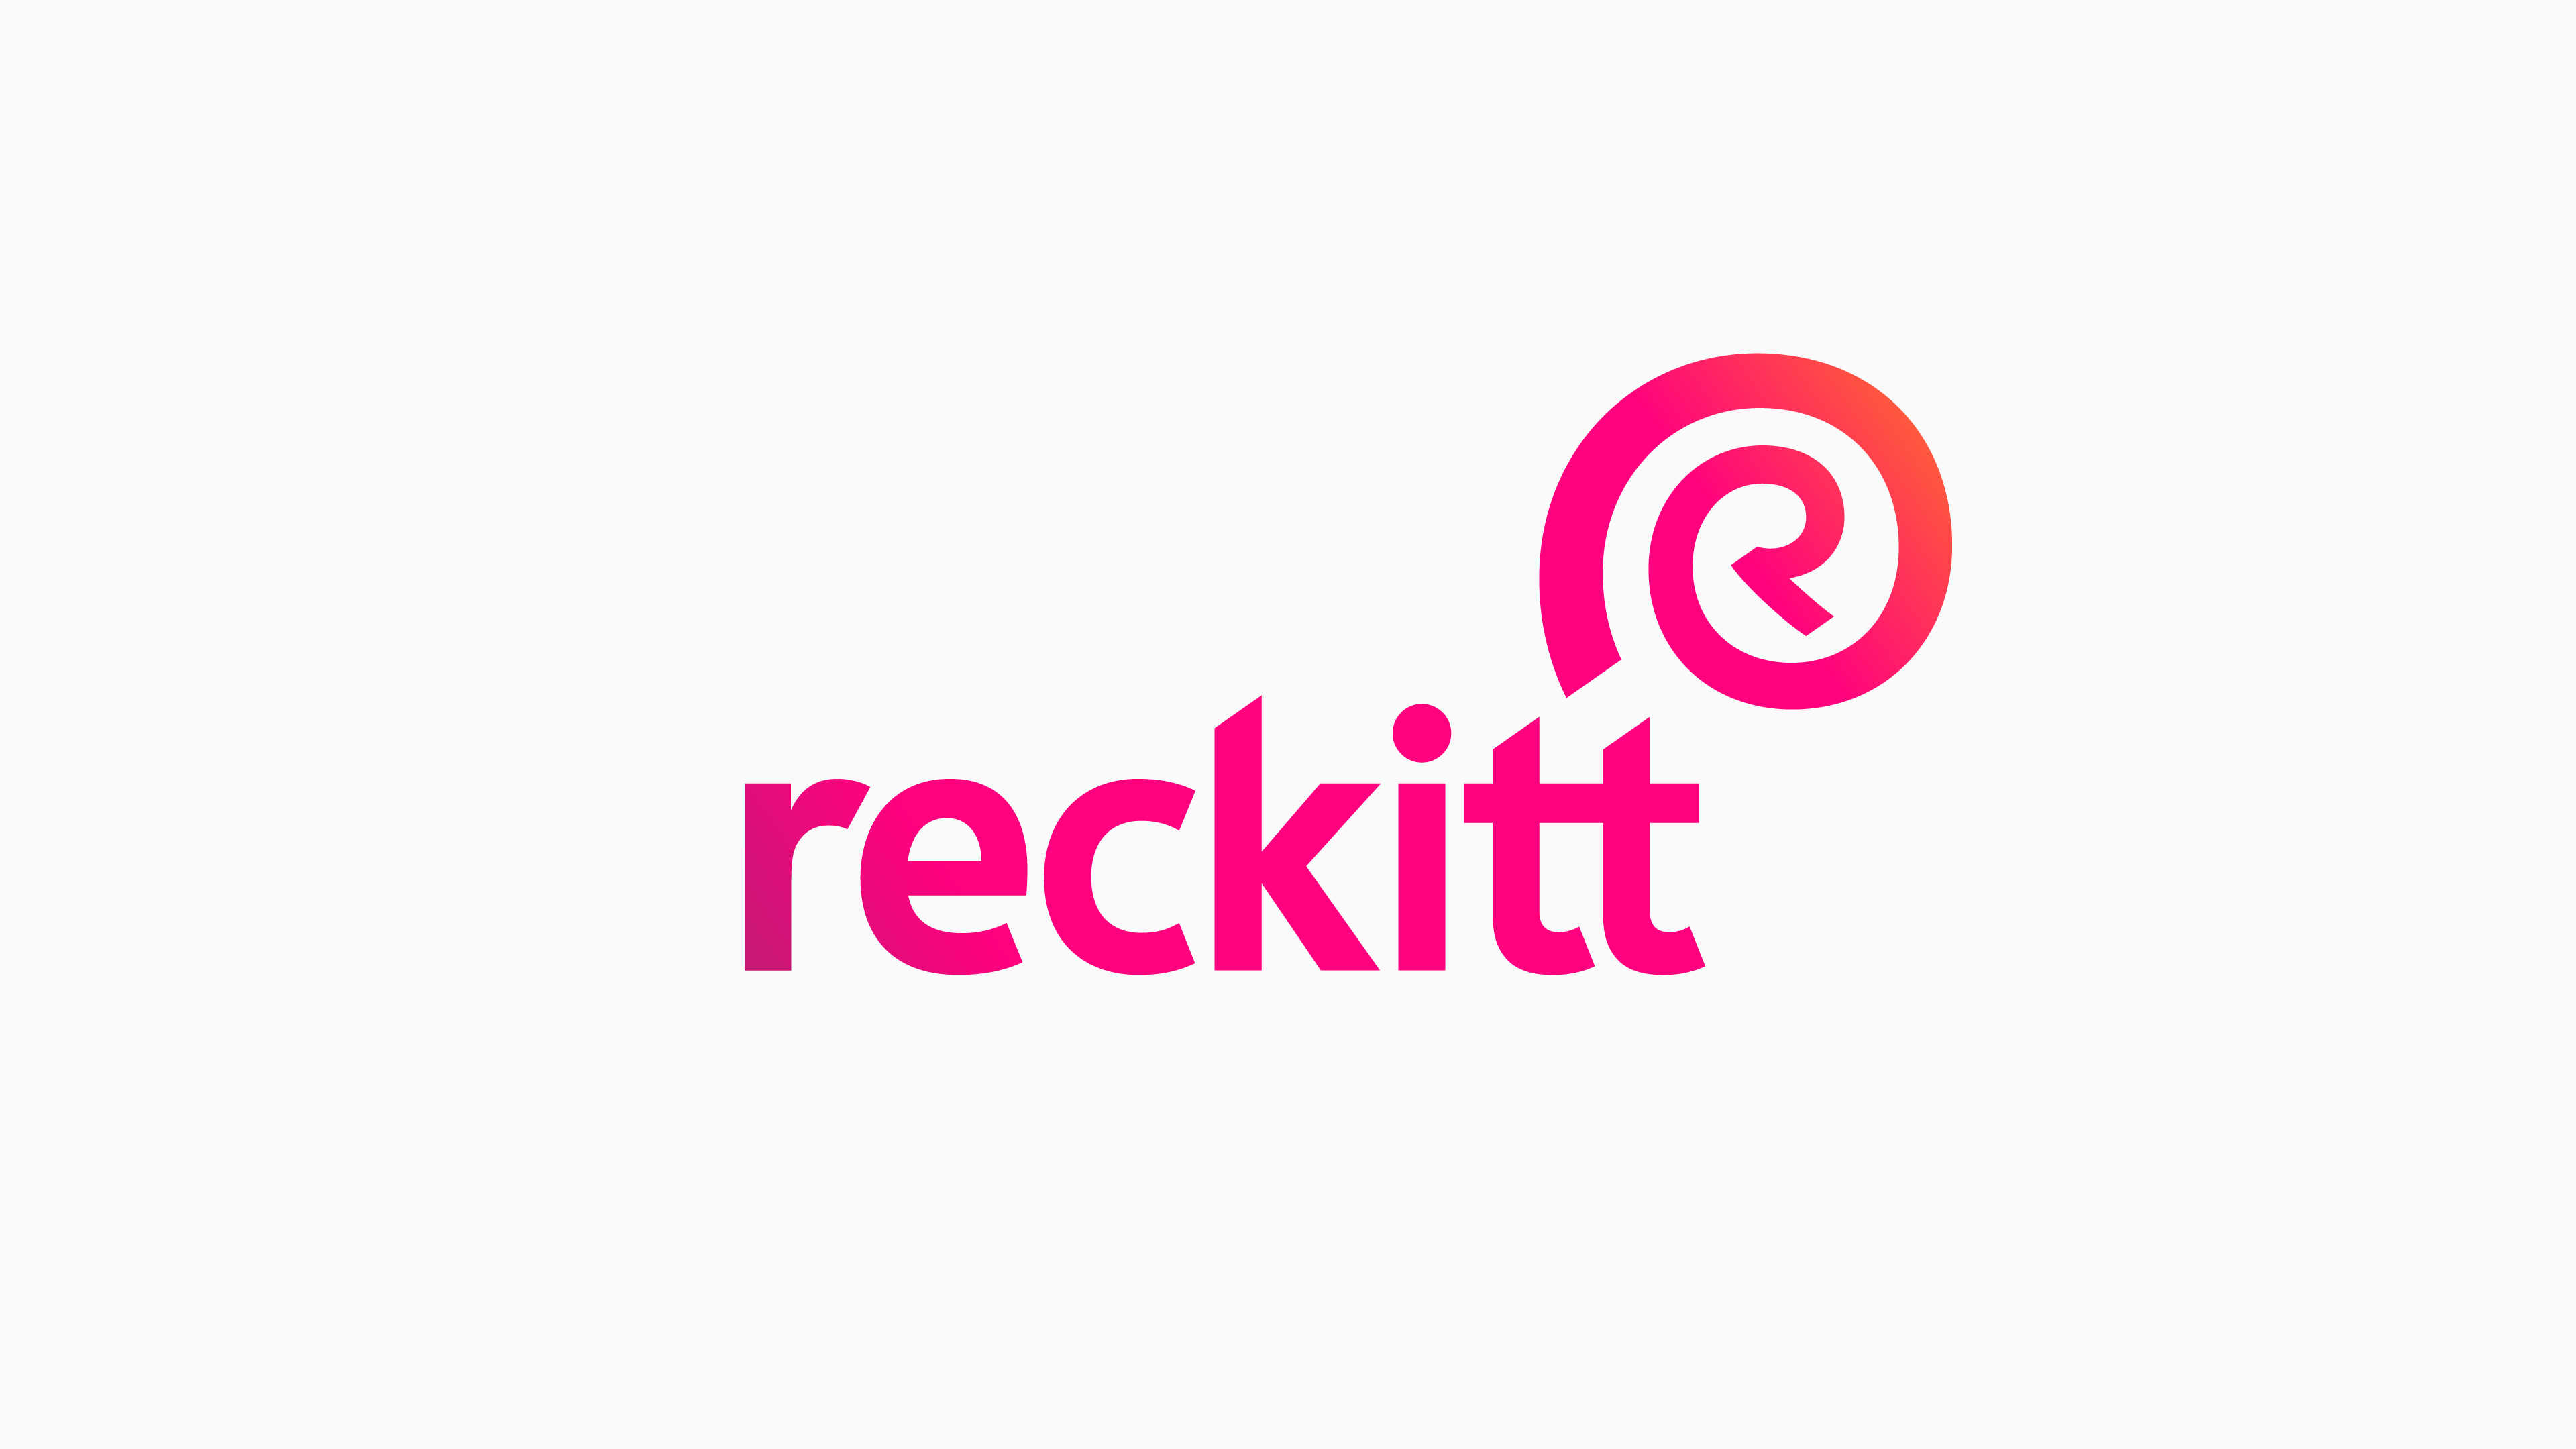 Reckitt logo inverted